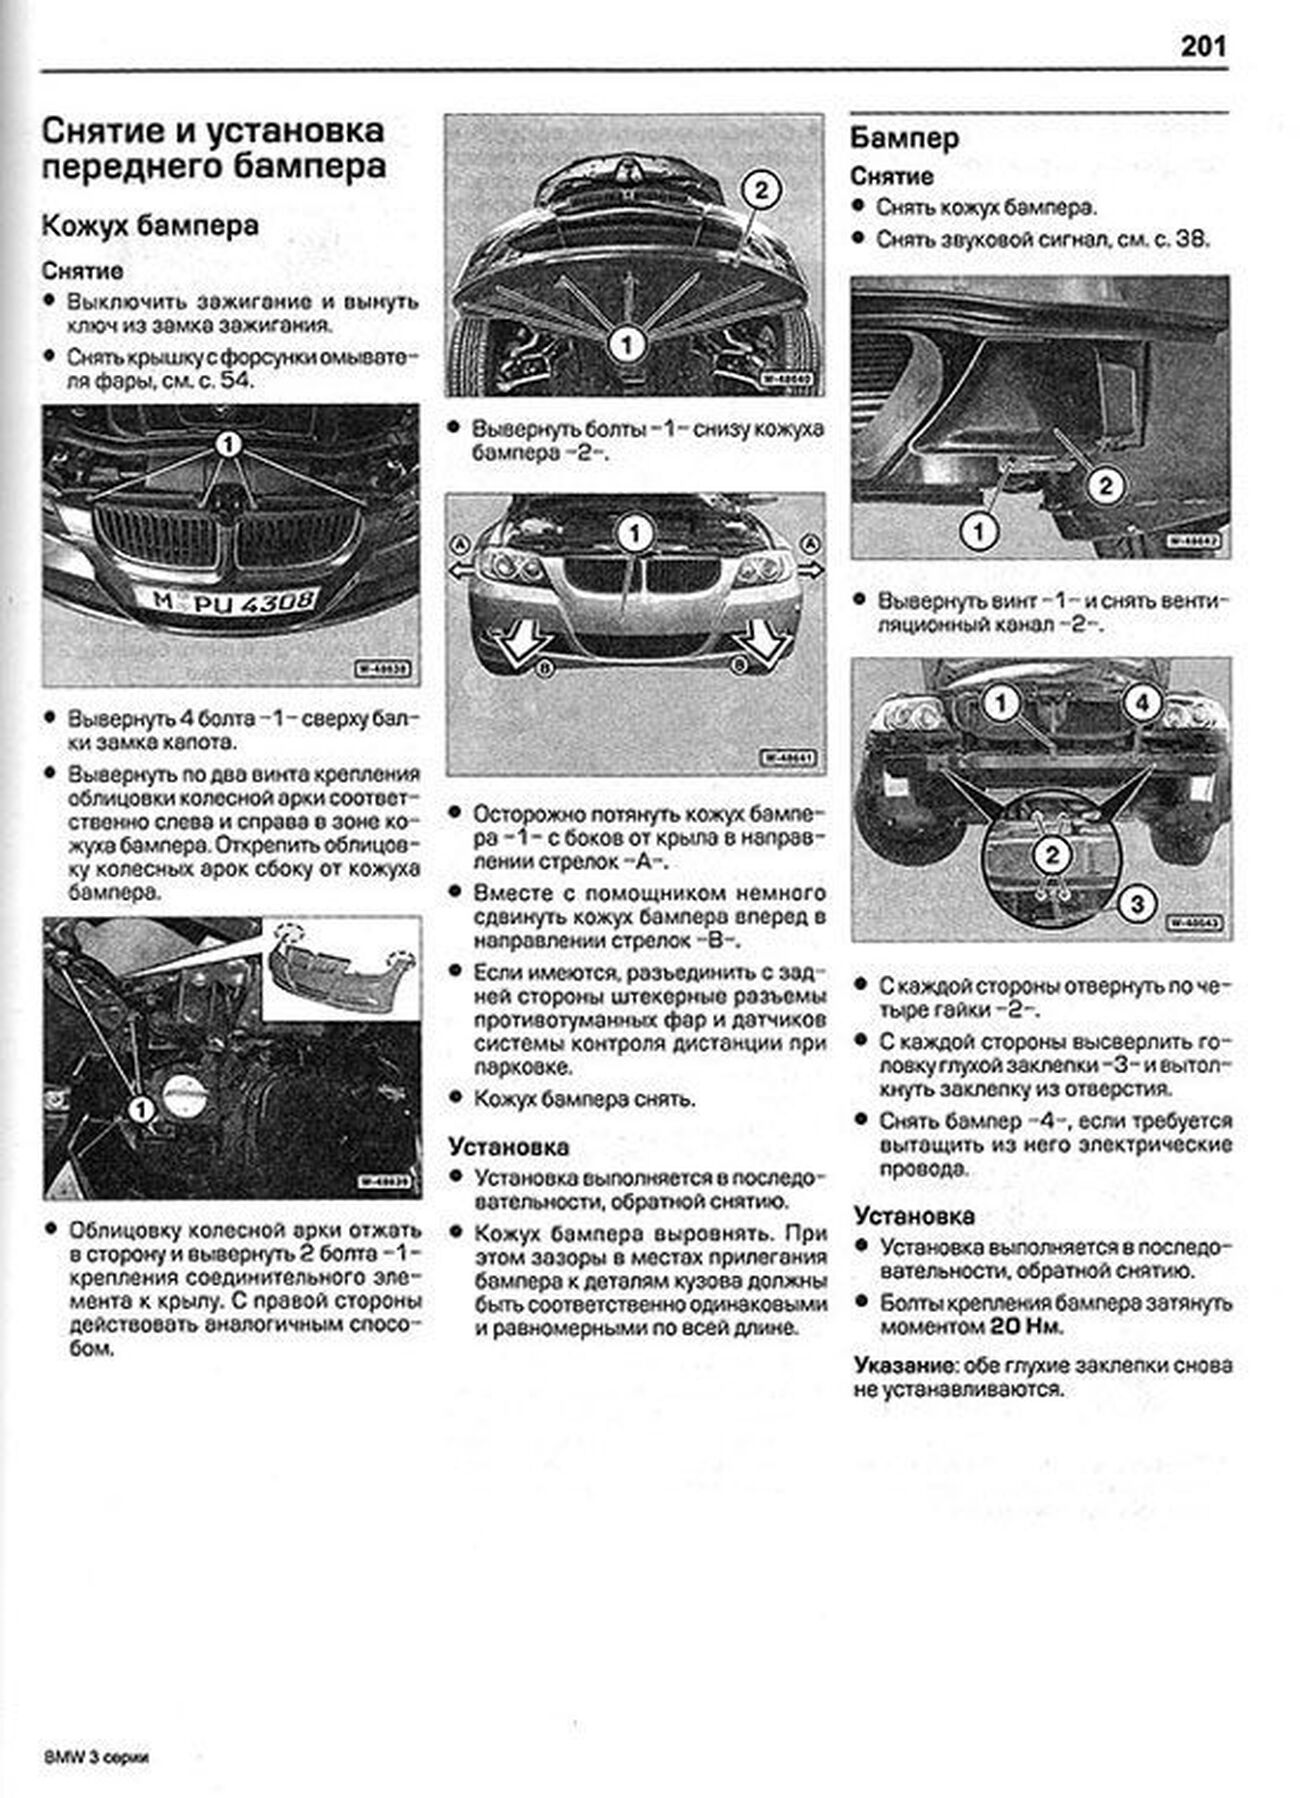 Книга: BMW 3 серии (E90 / E91) (б , д) с 2005 г.в., рем., экспл., то | Алфамер Паблишинг